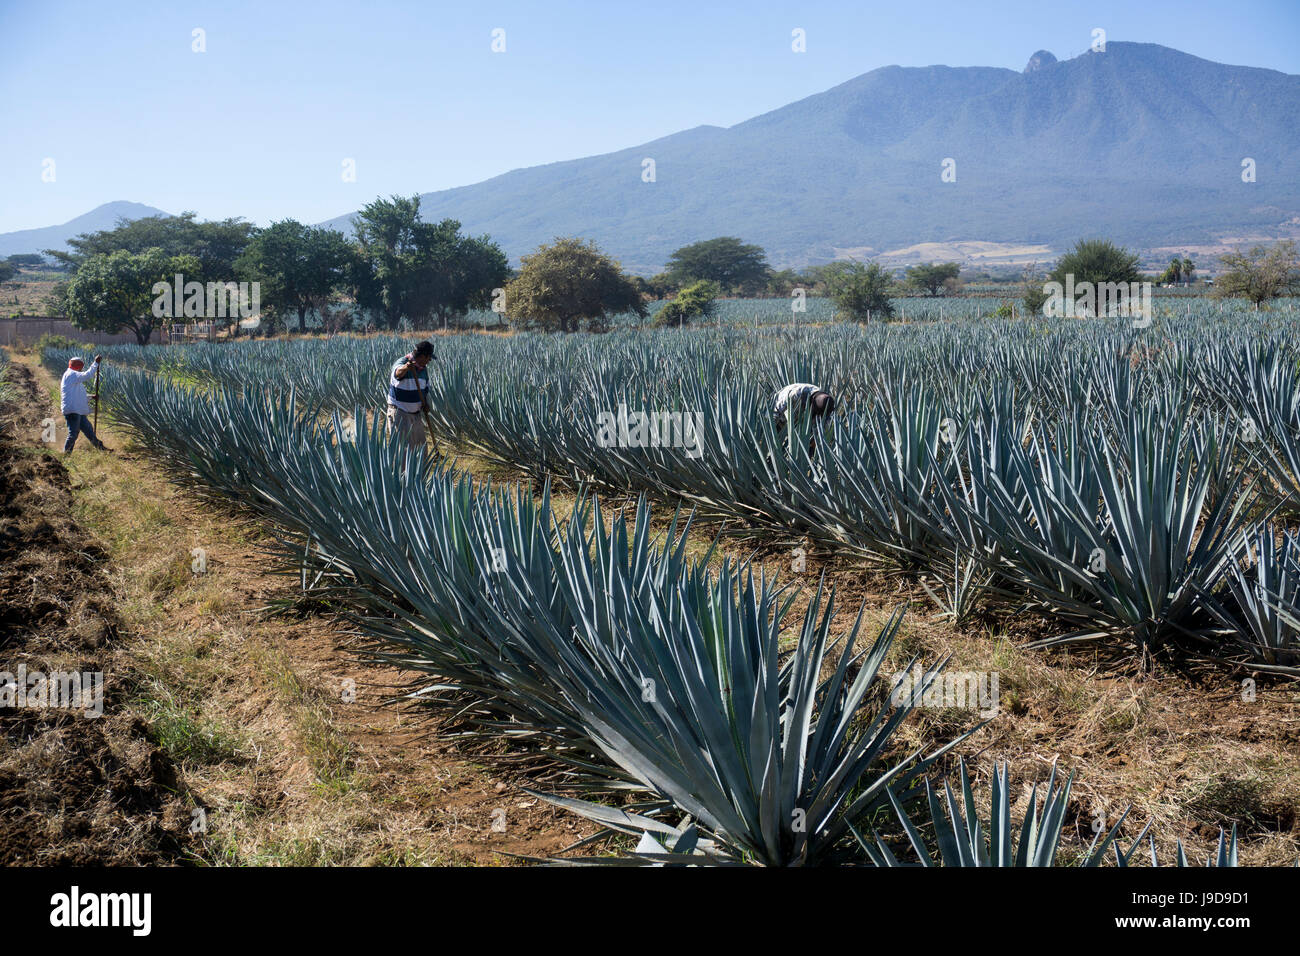 La Tequila est faite à partir de l'agave bleu dans l'Etat de Jalisco et principalement autour de la ville de Tequila, Jalisco, Mexique Banque D'Images